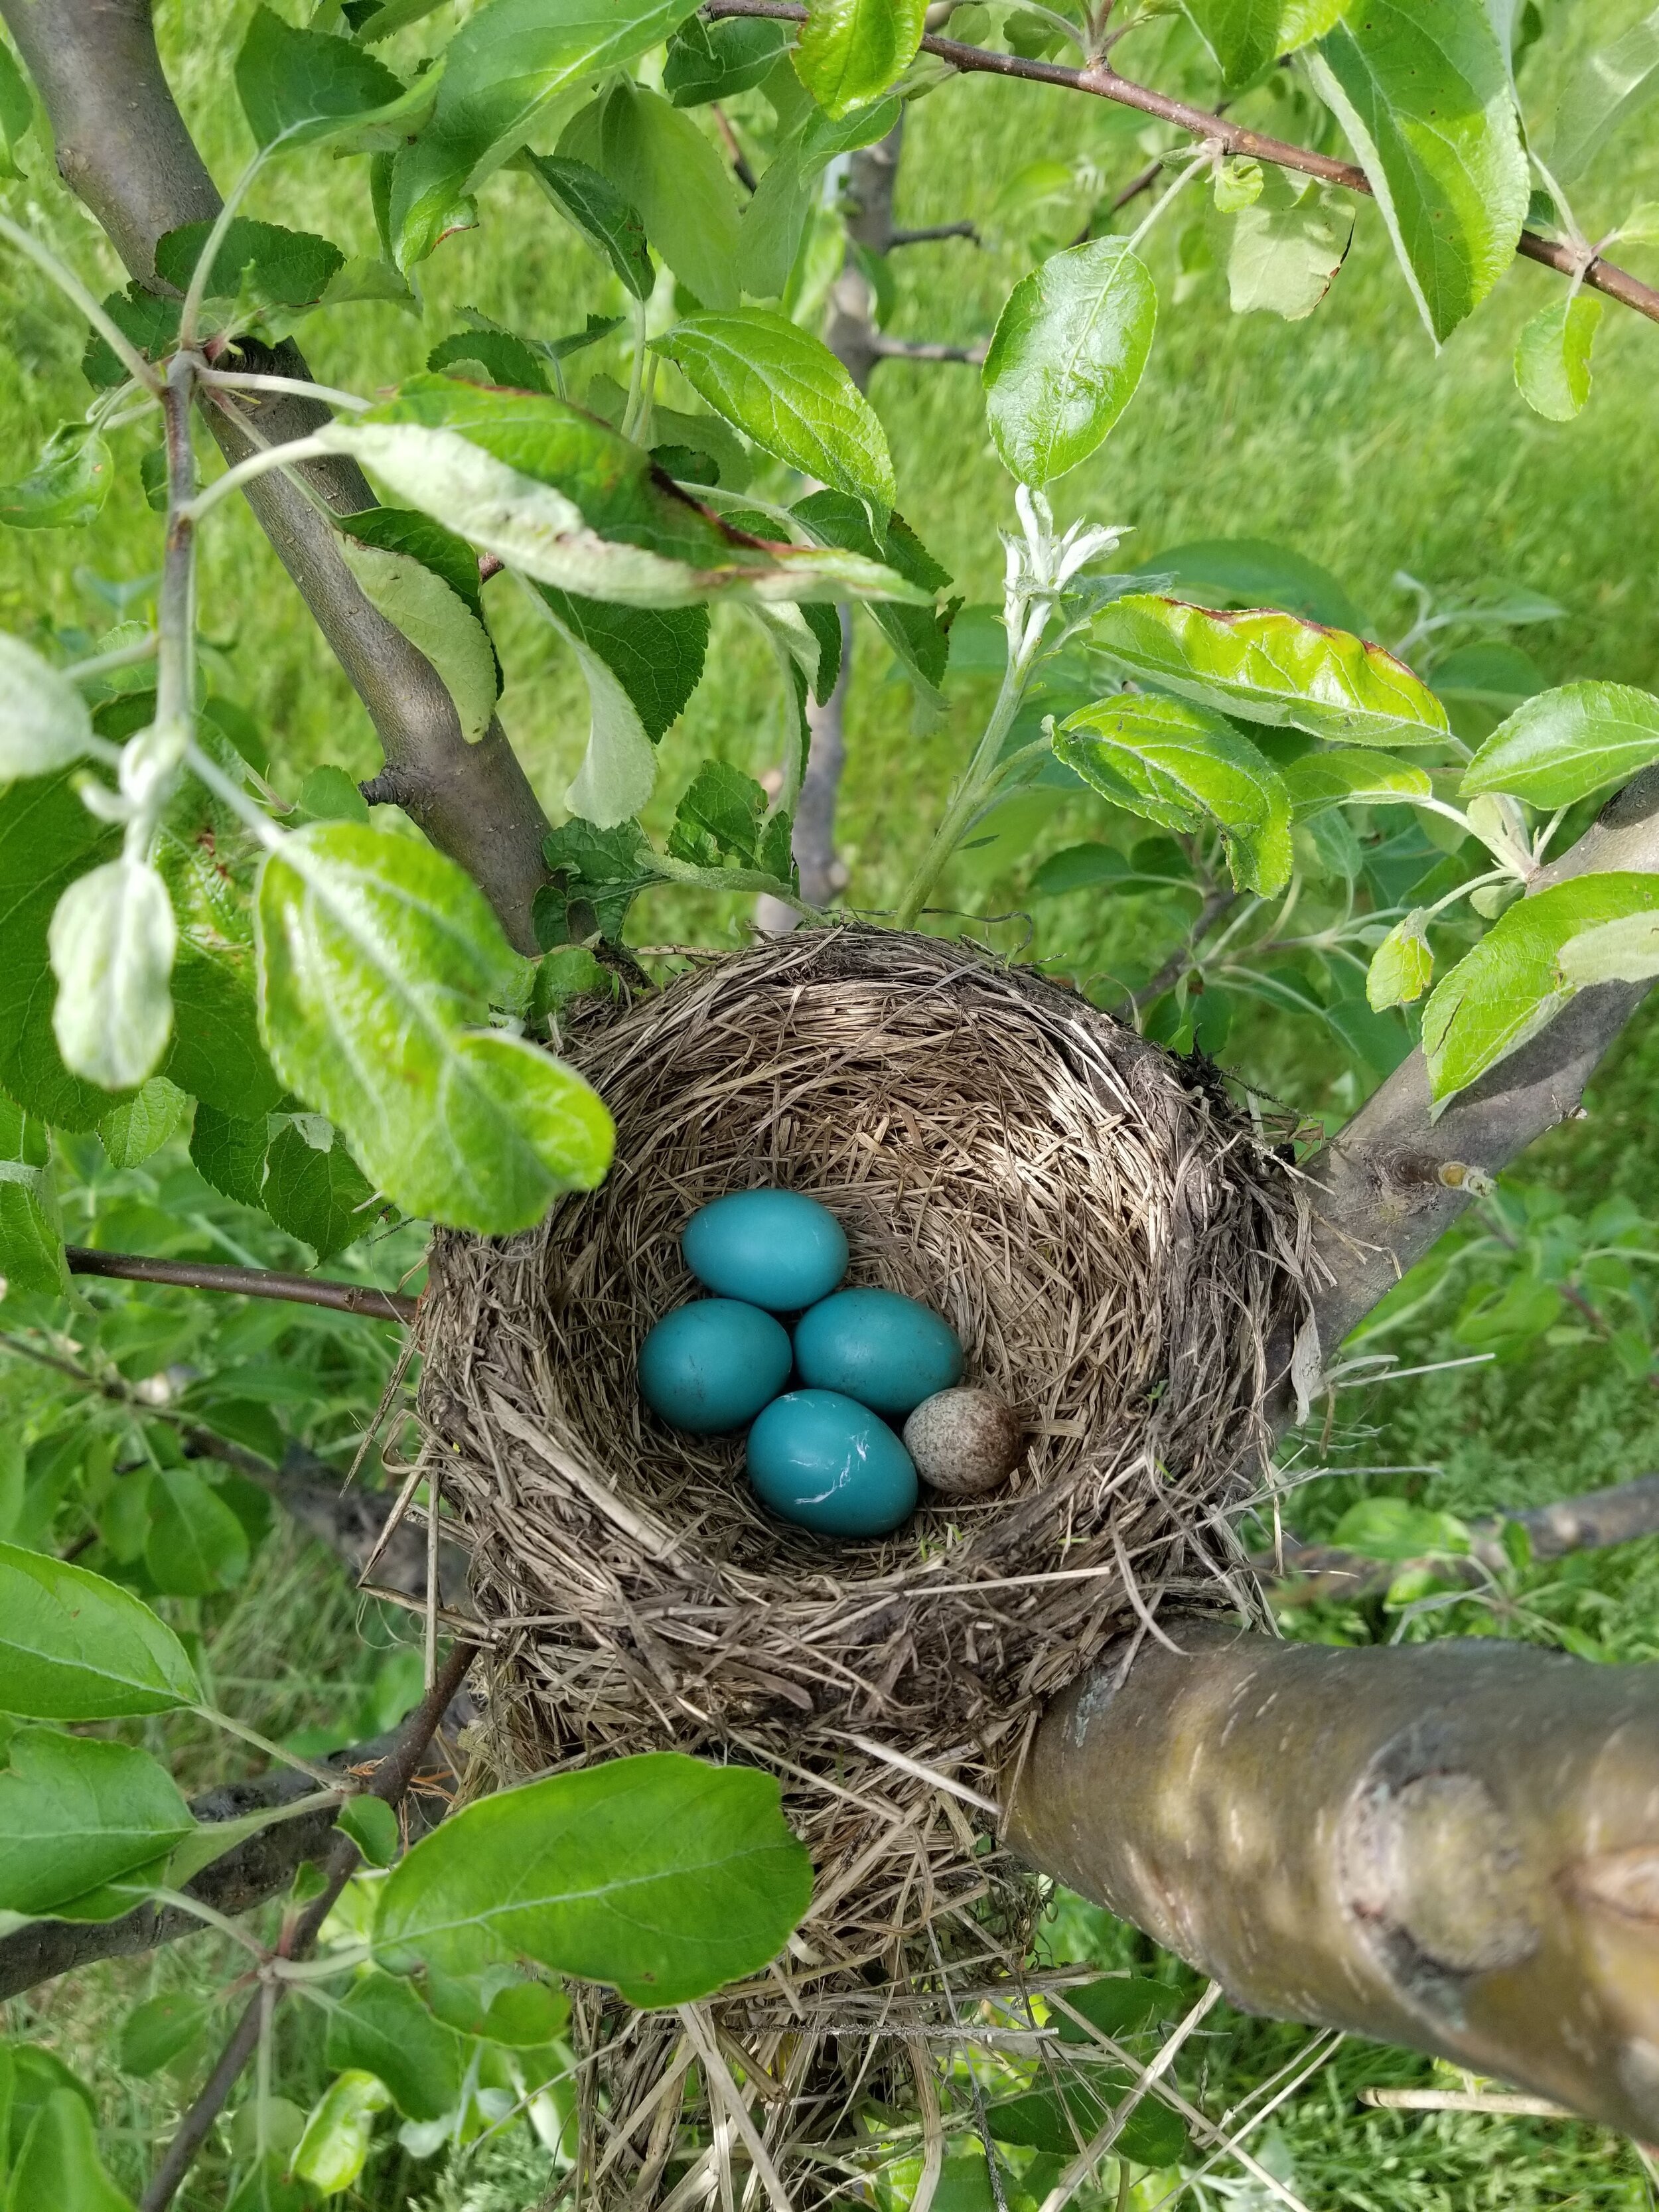 05.29.20 Cowbird egg in Robin's nest